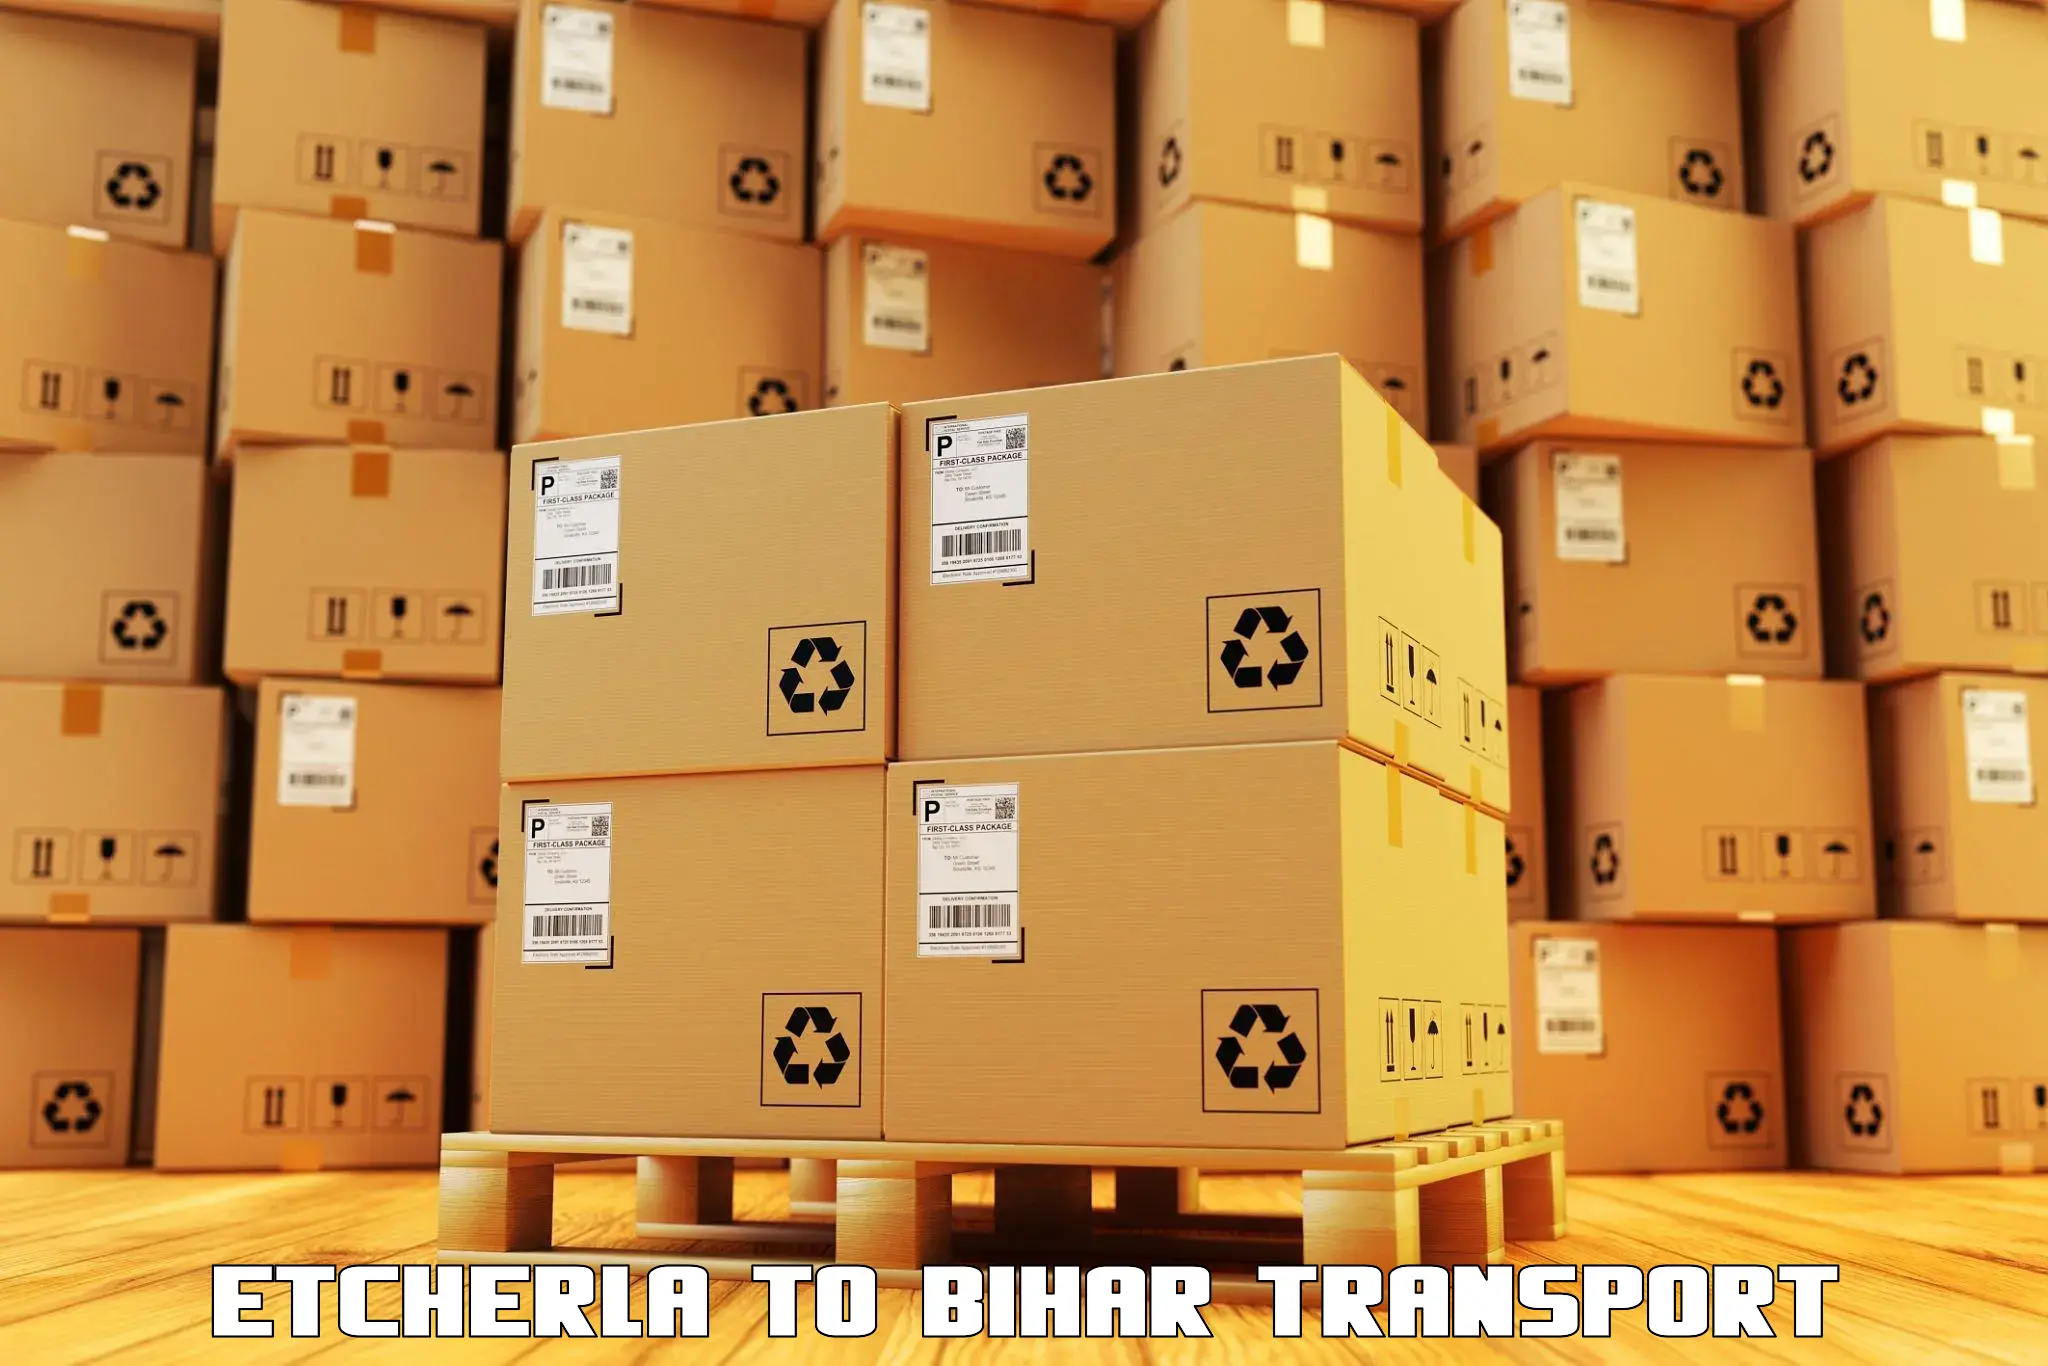 Transport shared services Etcherla to Hasanpura